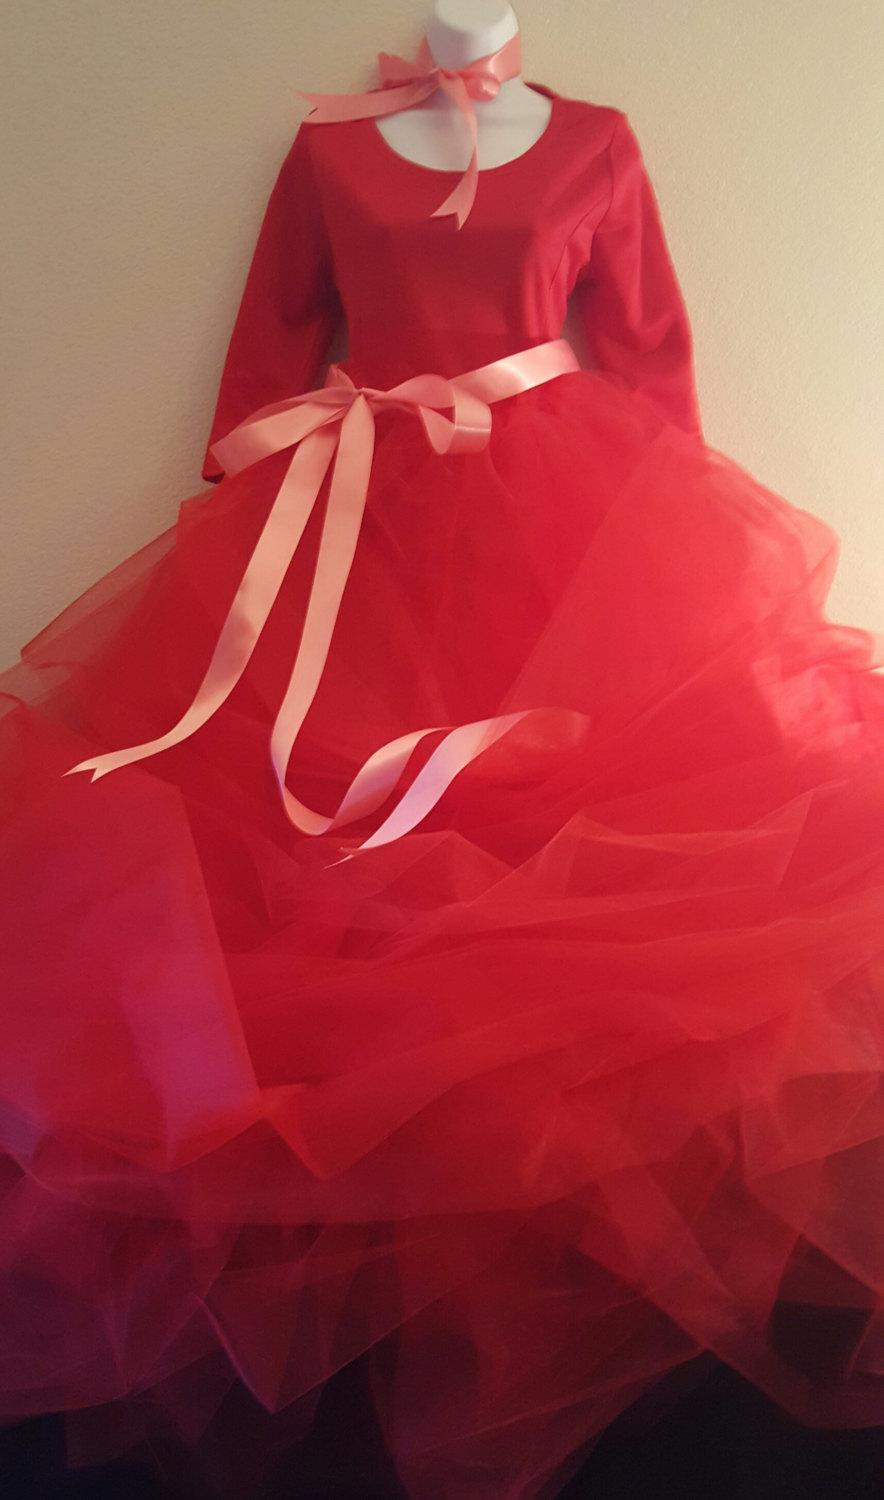 زفاف - Romantic Grace Kelly Inspired Red 3/4 Sleeve Ribbon Accent Tulle Ball Gown Dress Bridal Wedding Gown Party Costume